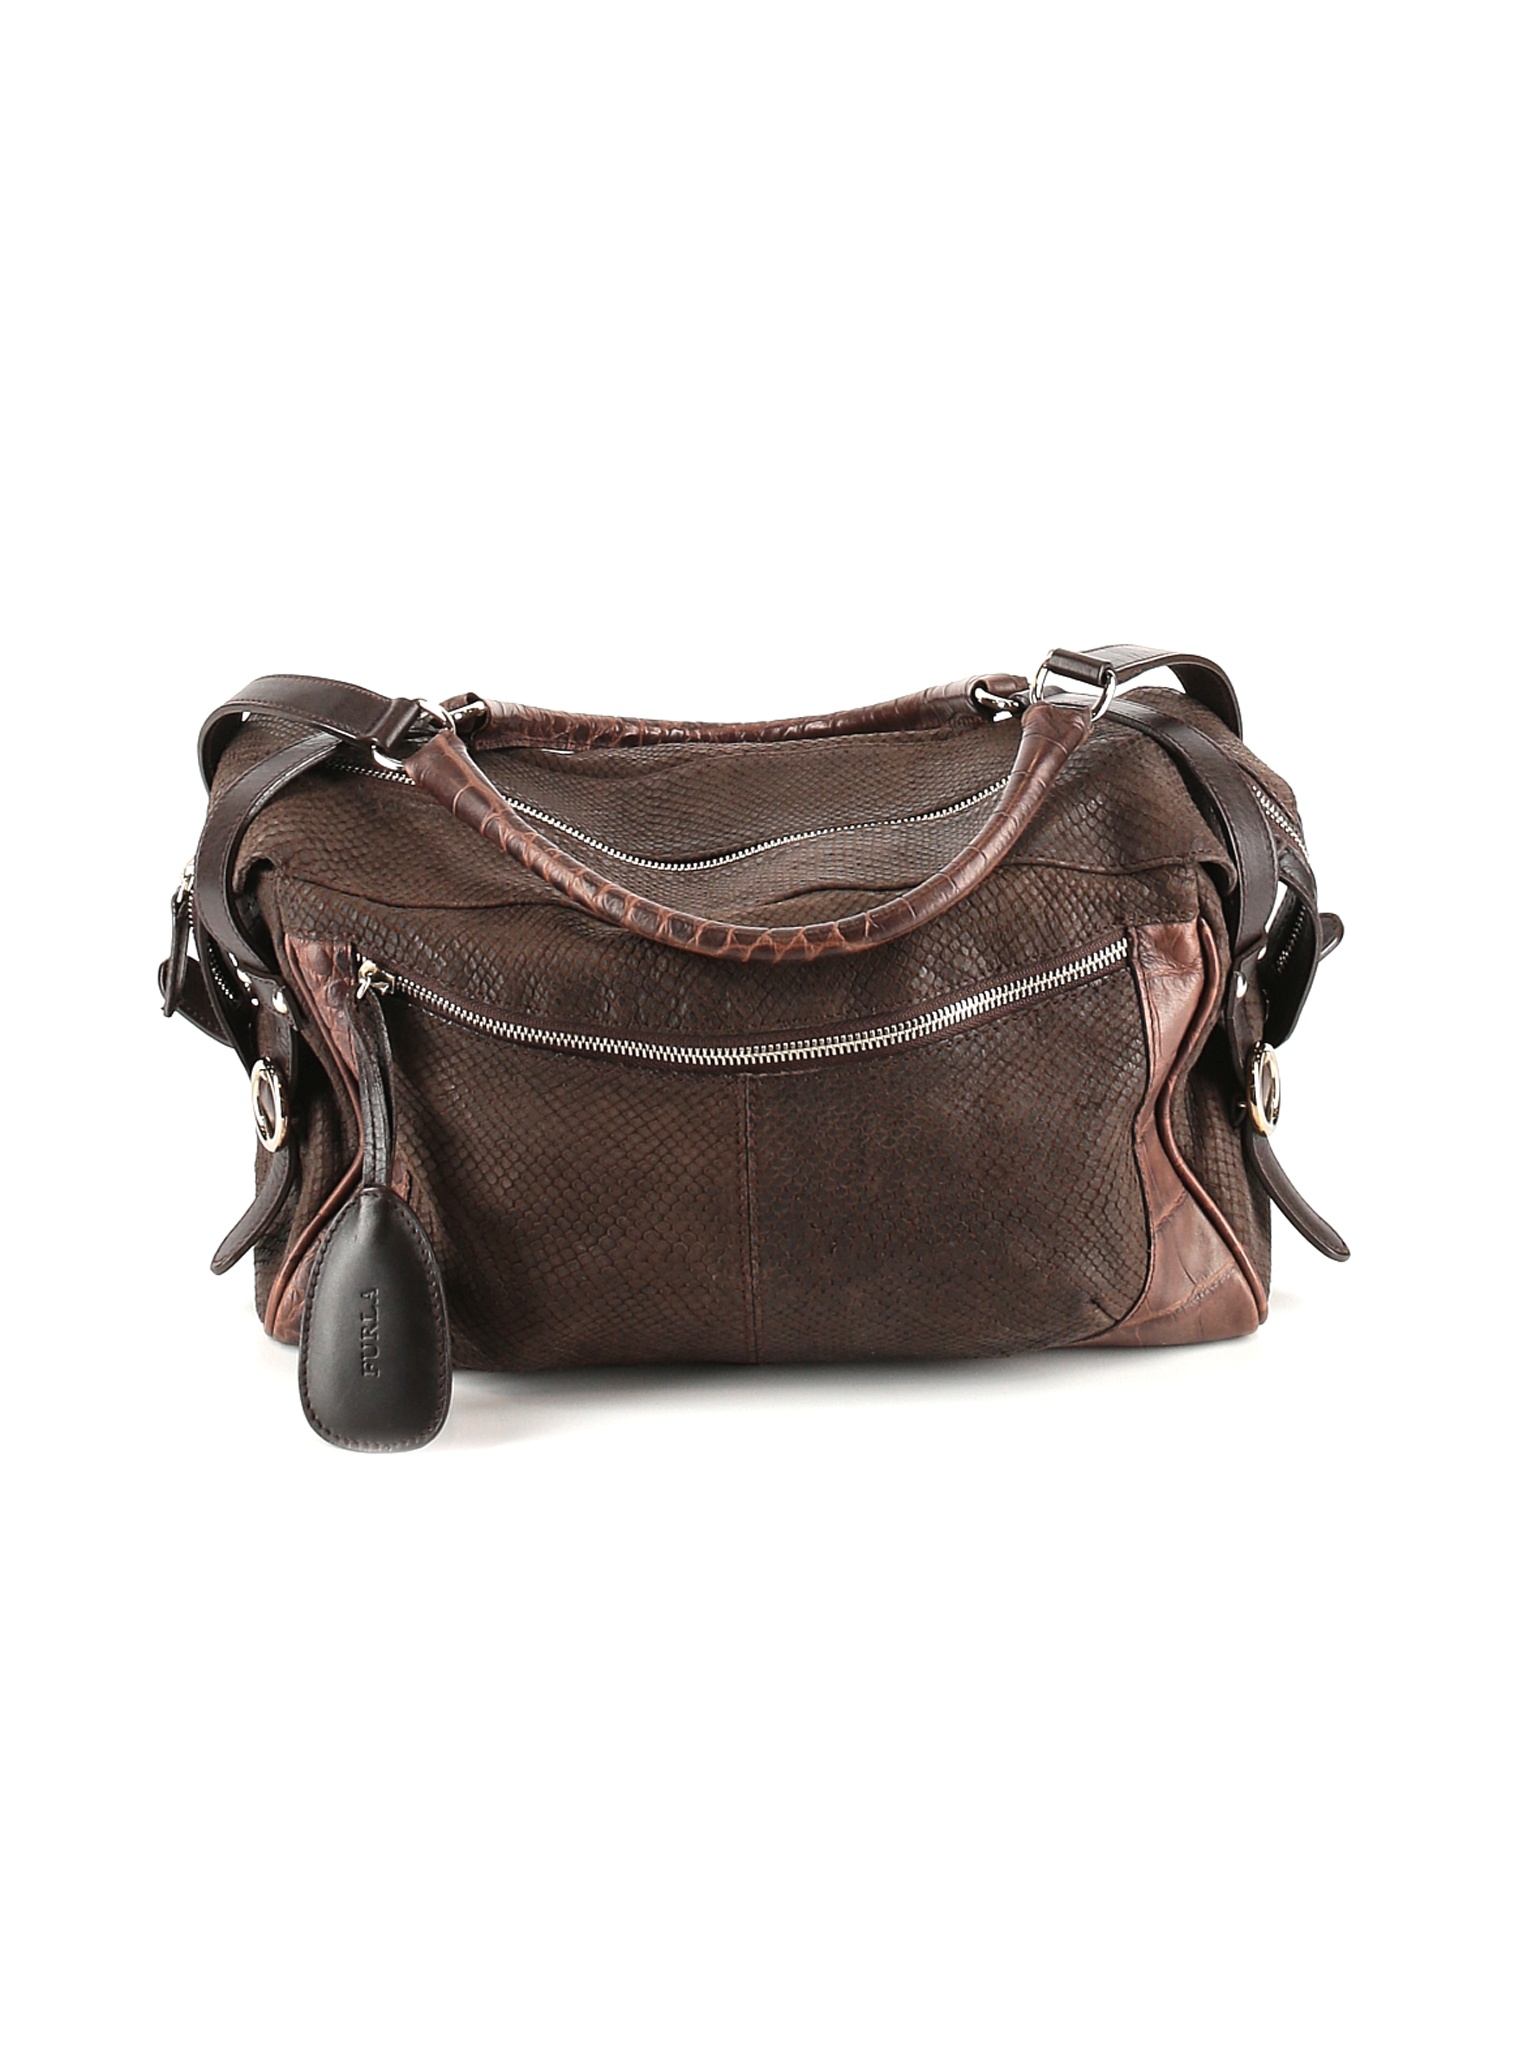 FURLA Women Brown Leather Shoulder Bag One Size | eBay